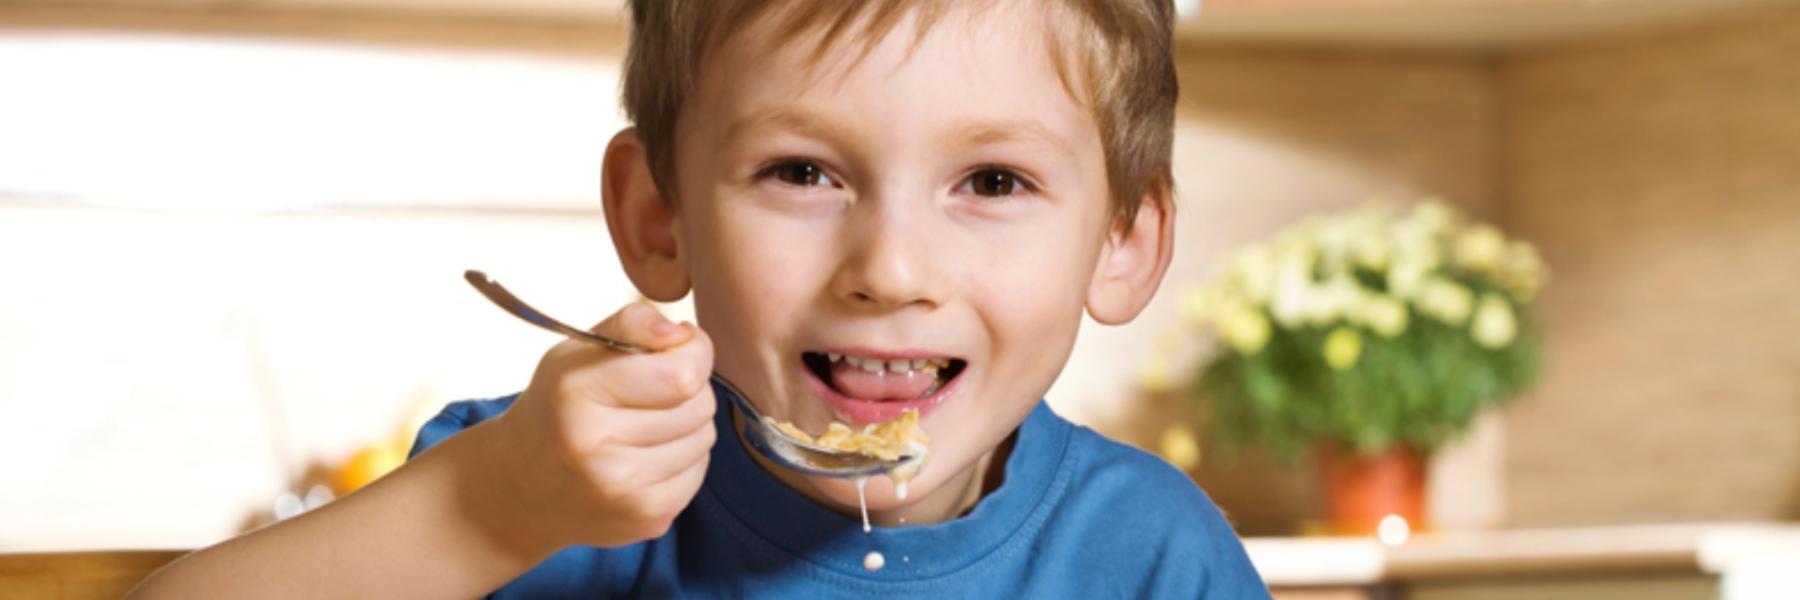  وجبات لا تقدميها لطفلك في فصل الشتاء %D8%B7%D9%81%D9%84%20%D9%8A%D8%A7%D9%83%D9%84